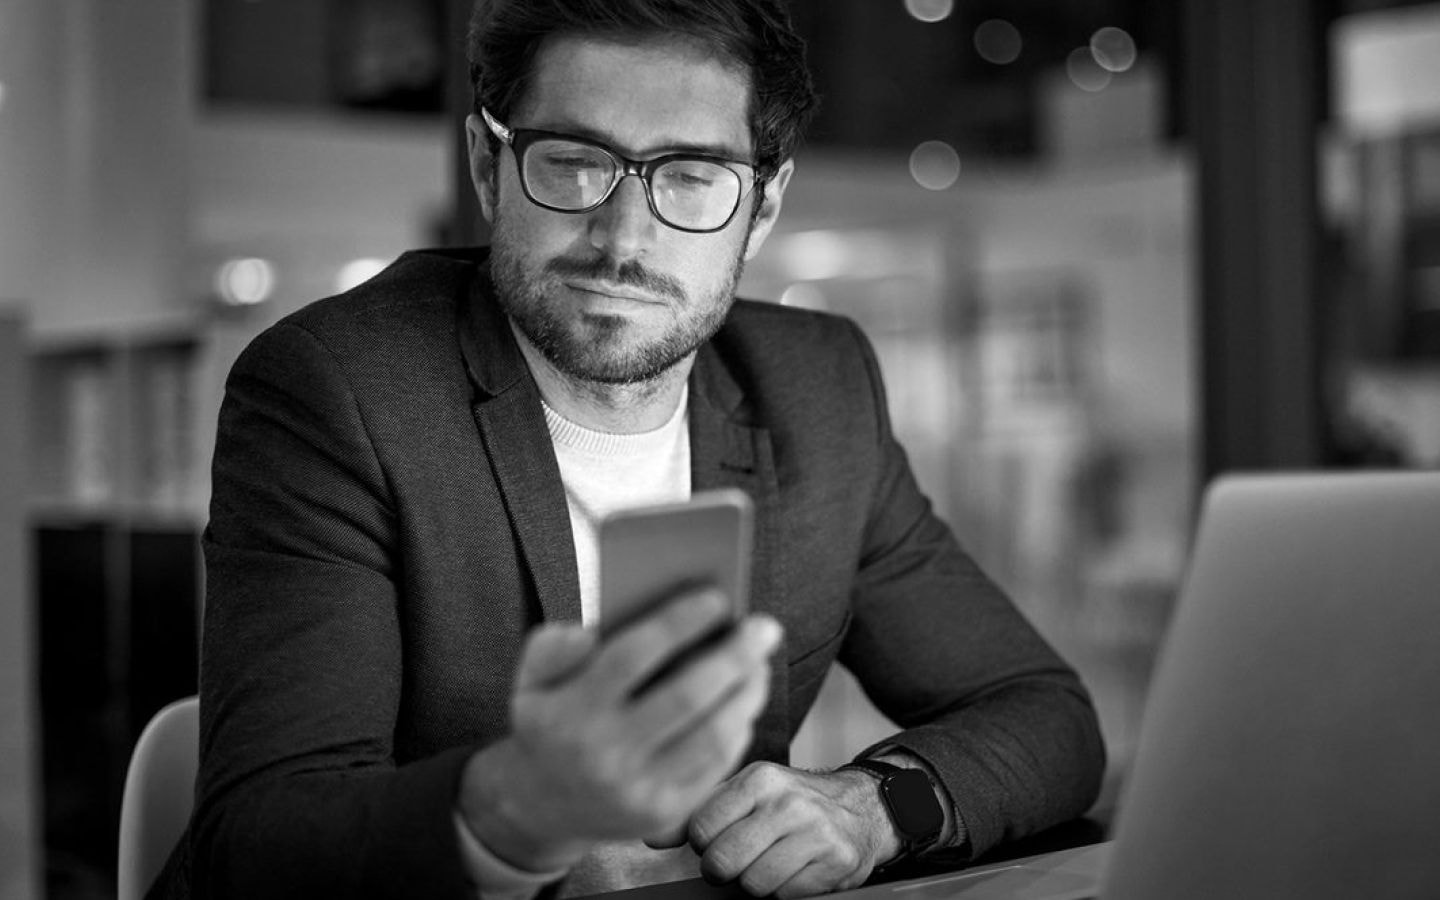 Foto de um homem branco, de cabelos lisos curtos. Ele segura um celular em sua mão direita. A foto está em preto e branco. Ele usa camiseta, blazer e óculos e está sentado em frente à um notebook.